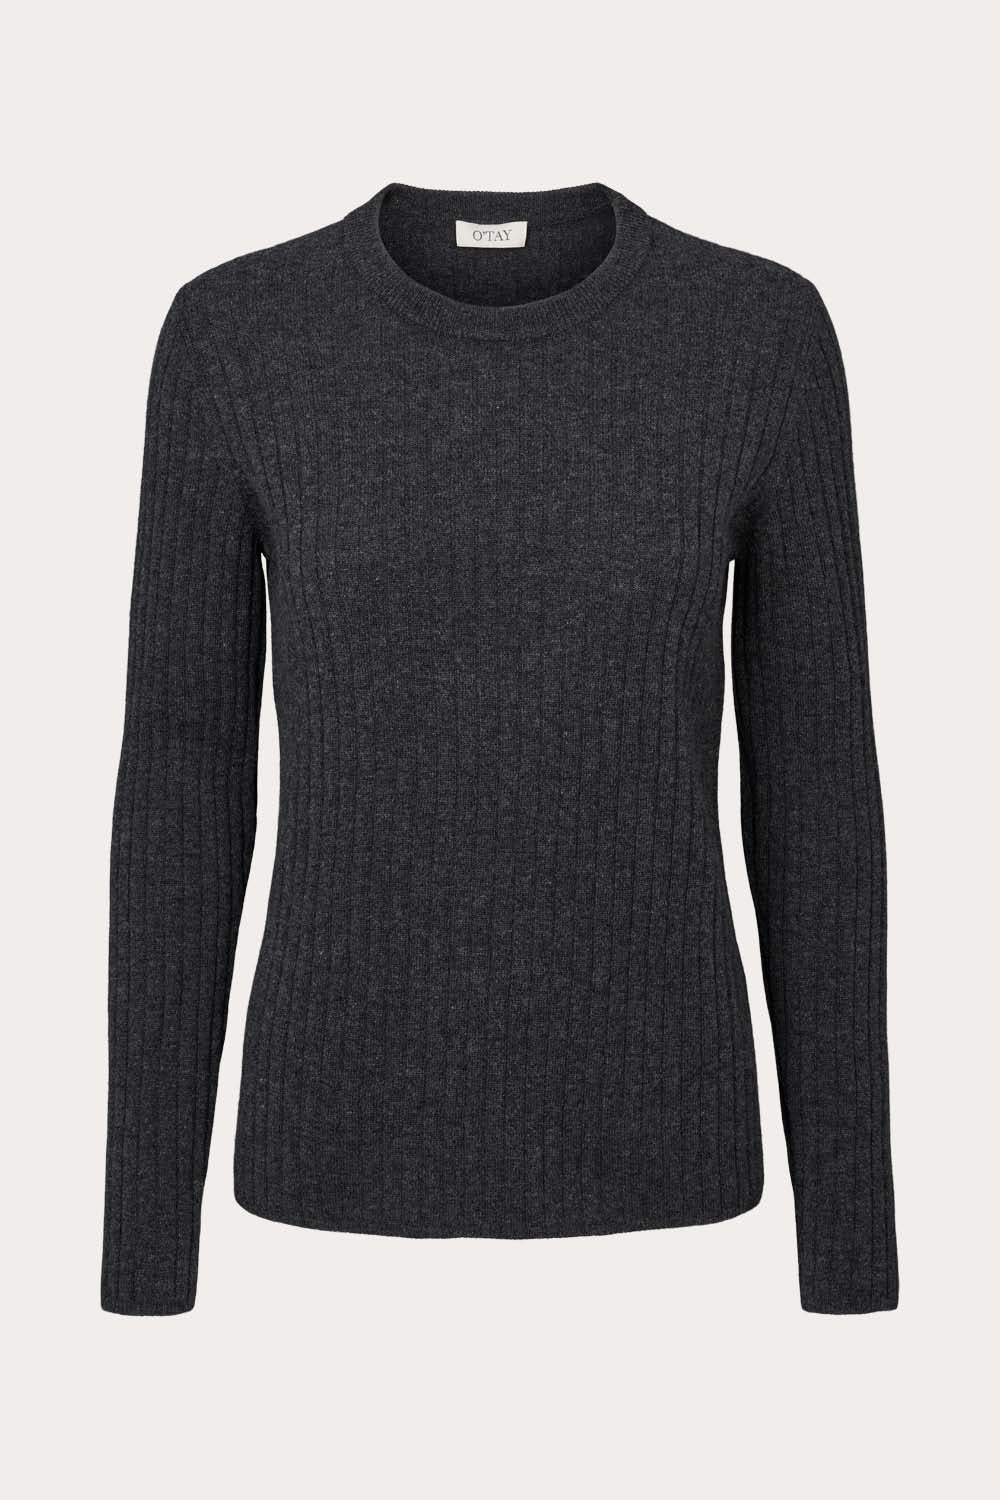 O'TAY Dulcia Sweater Bluser Charcoal